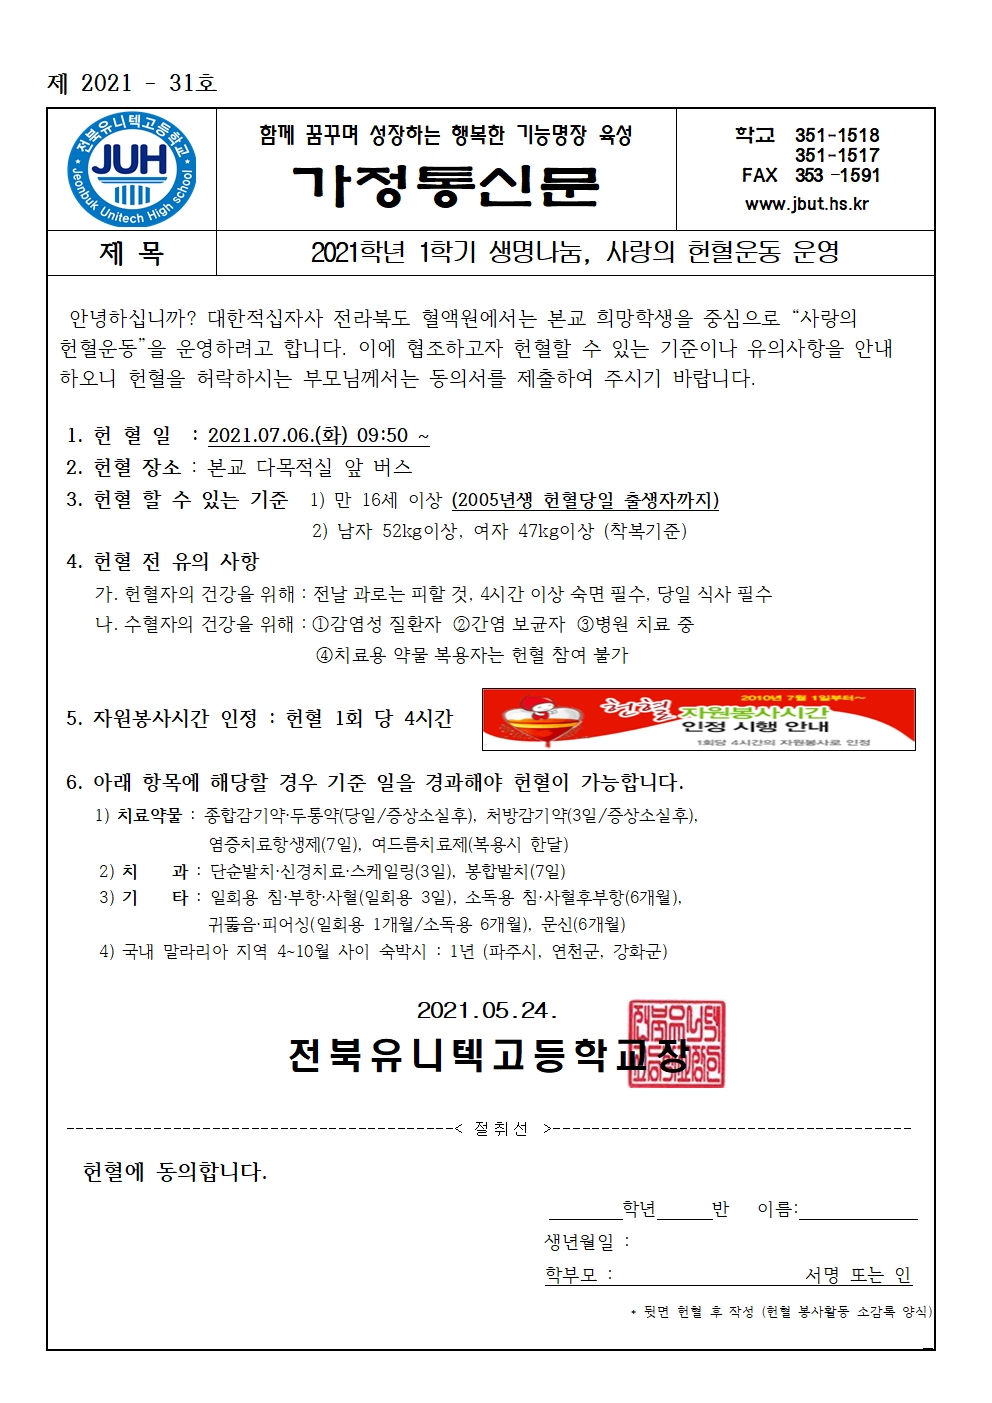 2021학년 1학기 생명나눔, 사랑의헌혈운동 운영(가정통신문)001